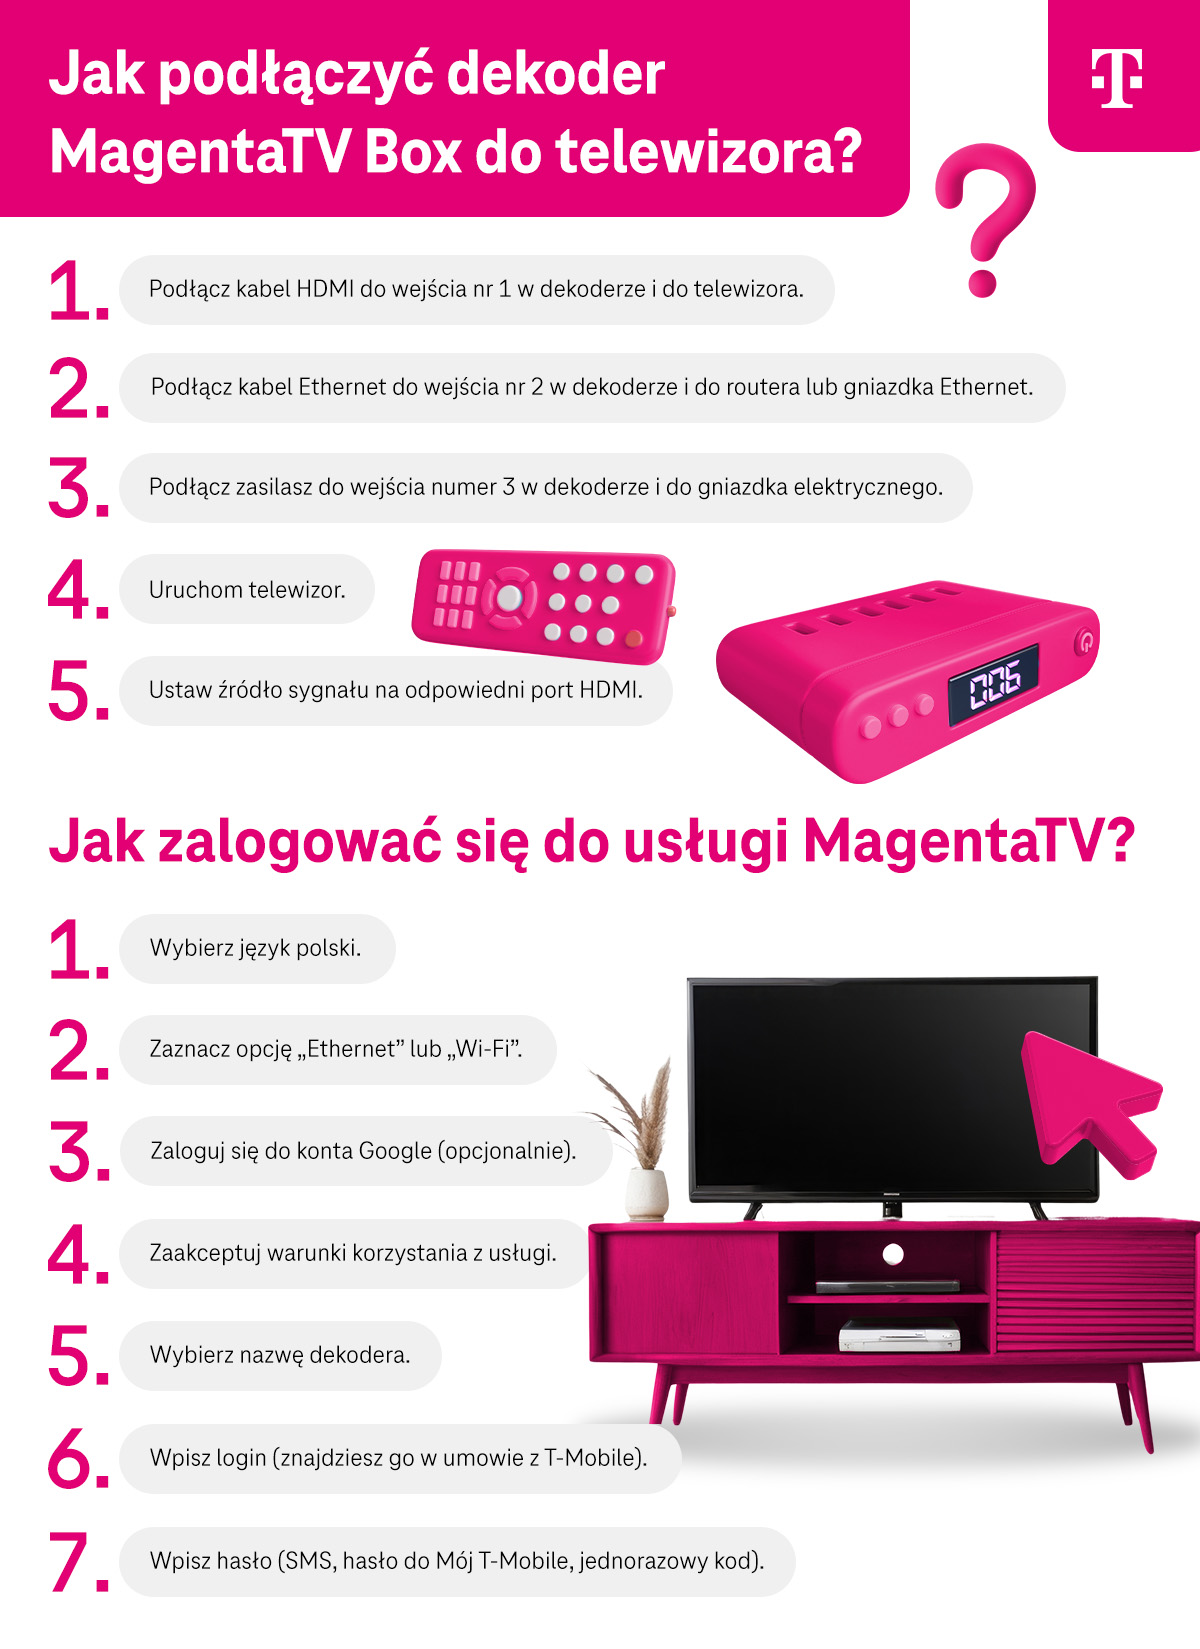 Instrukcja w 5 krokach jak podłączyć dekoder MagentaTV Box do telewizora oraz jak zalogować się do usługi MagentaTV - 7 kroków - infografika